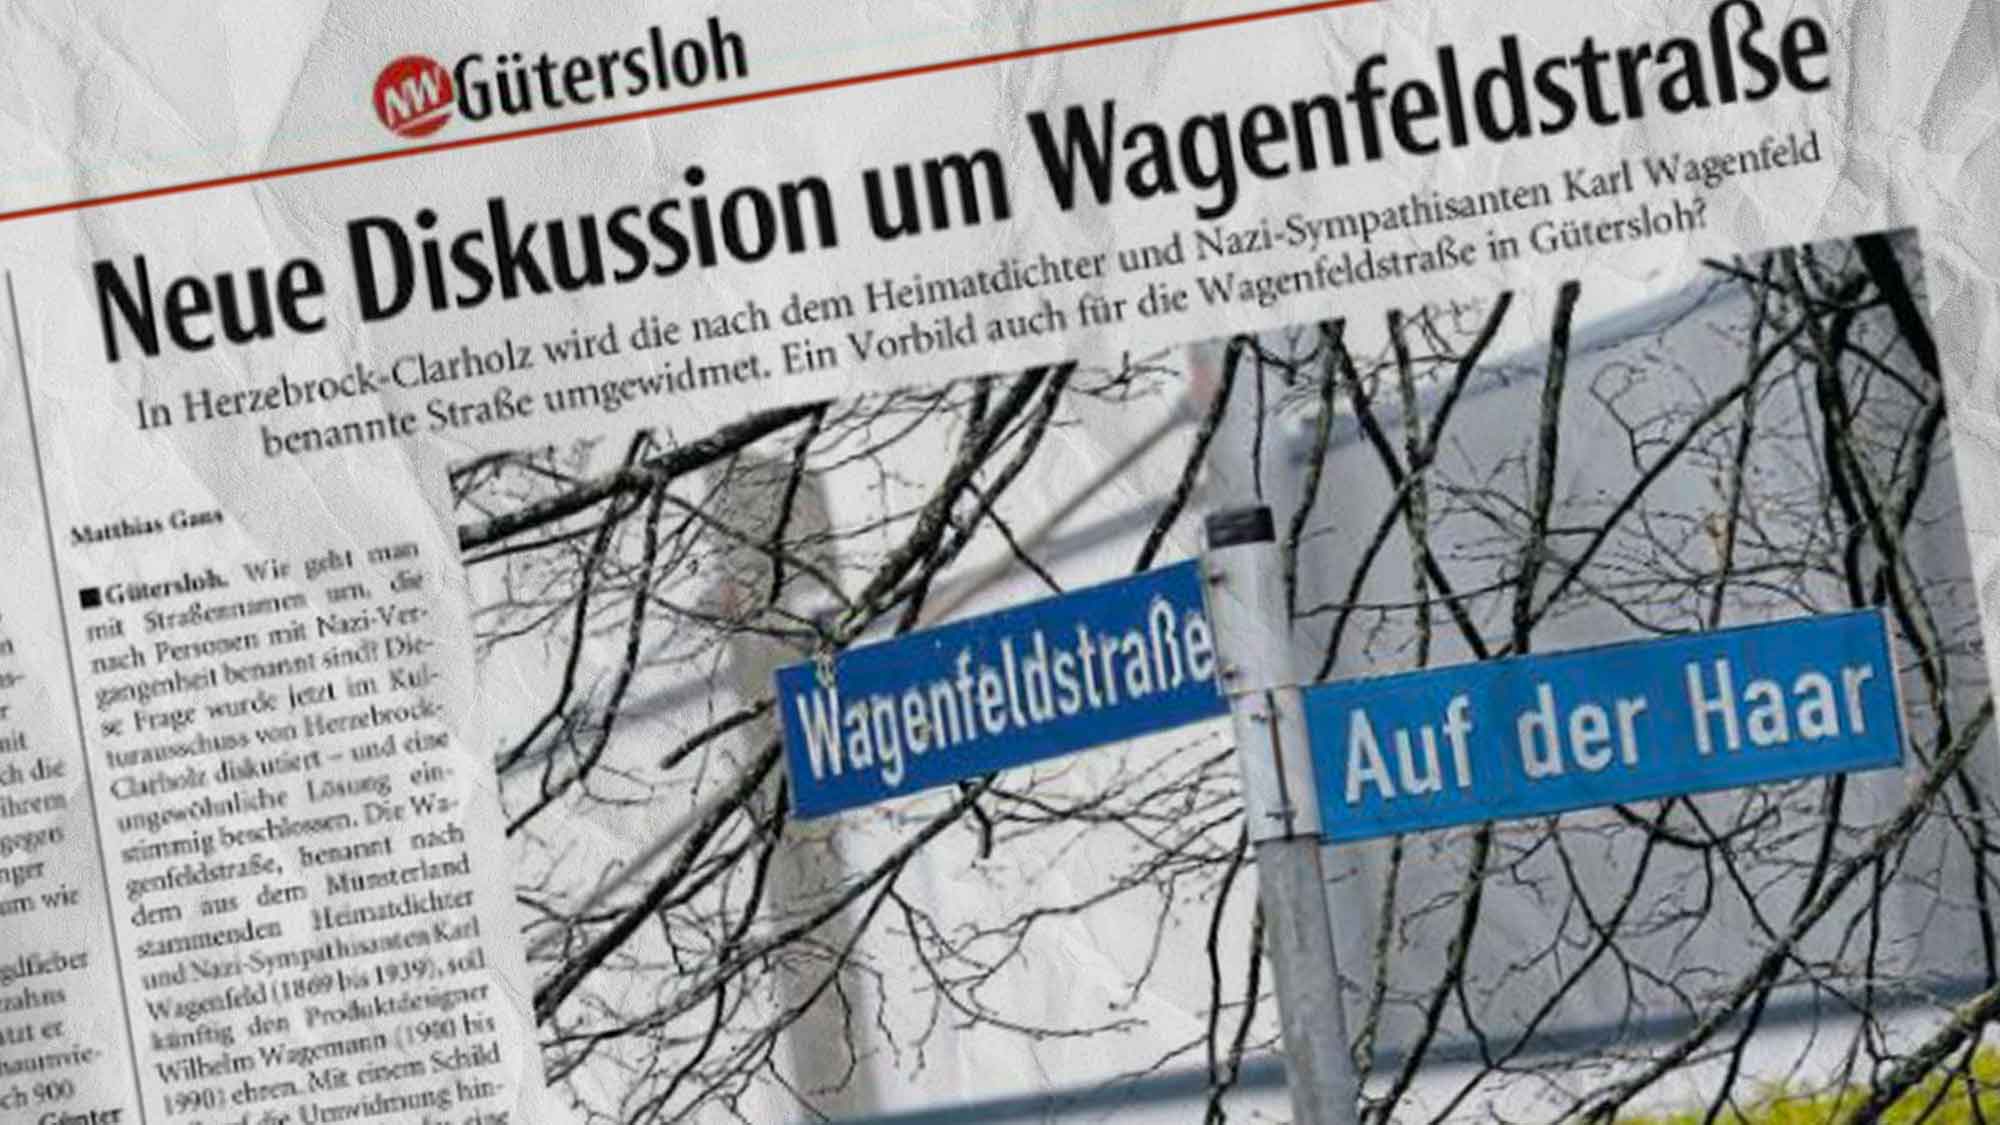 Gütersloh: Neue Diskussion um die Wagenfeldstraße – sollten Straßen nach Personen benannt werden?